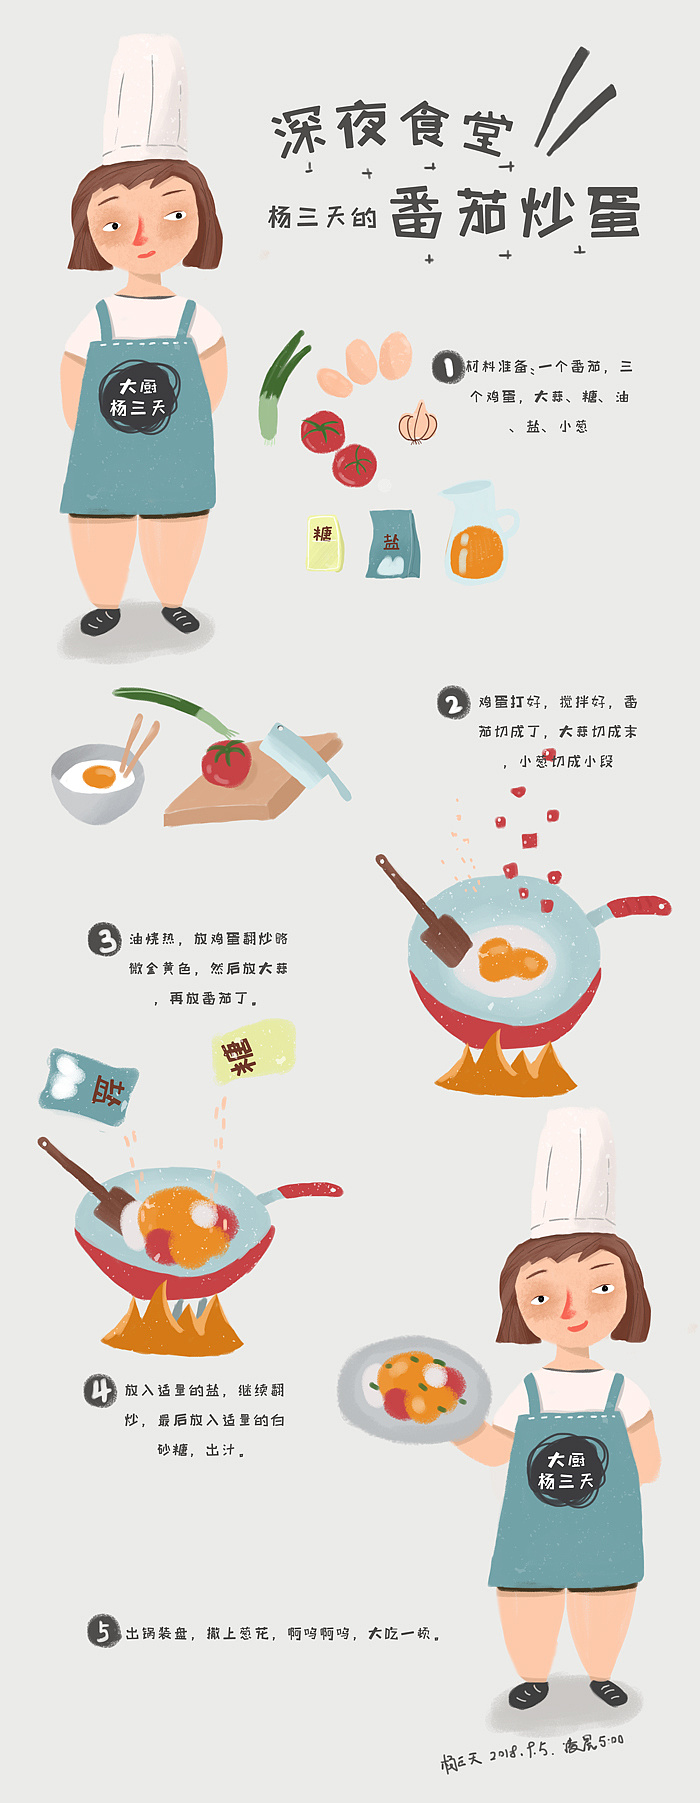 原创手绘插画菜谱——深夜食堂之杨三天的番茄炒蛋